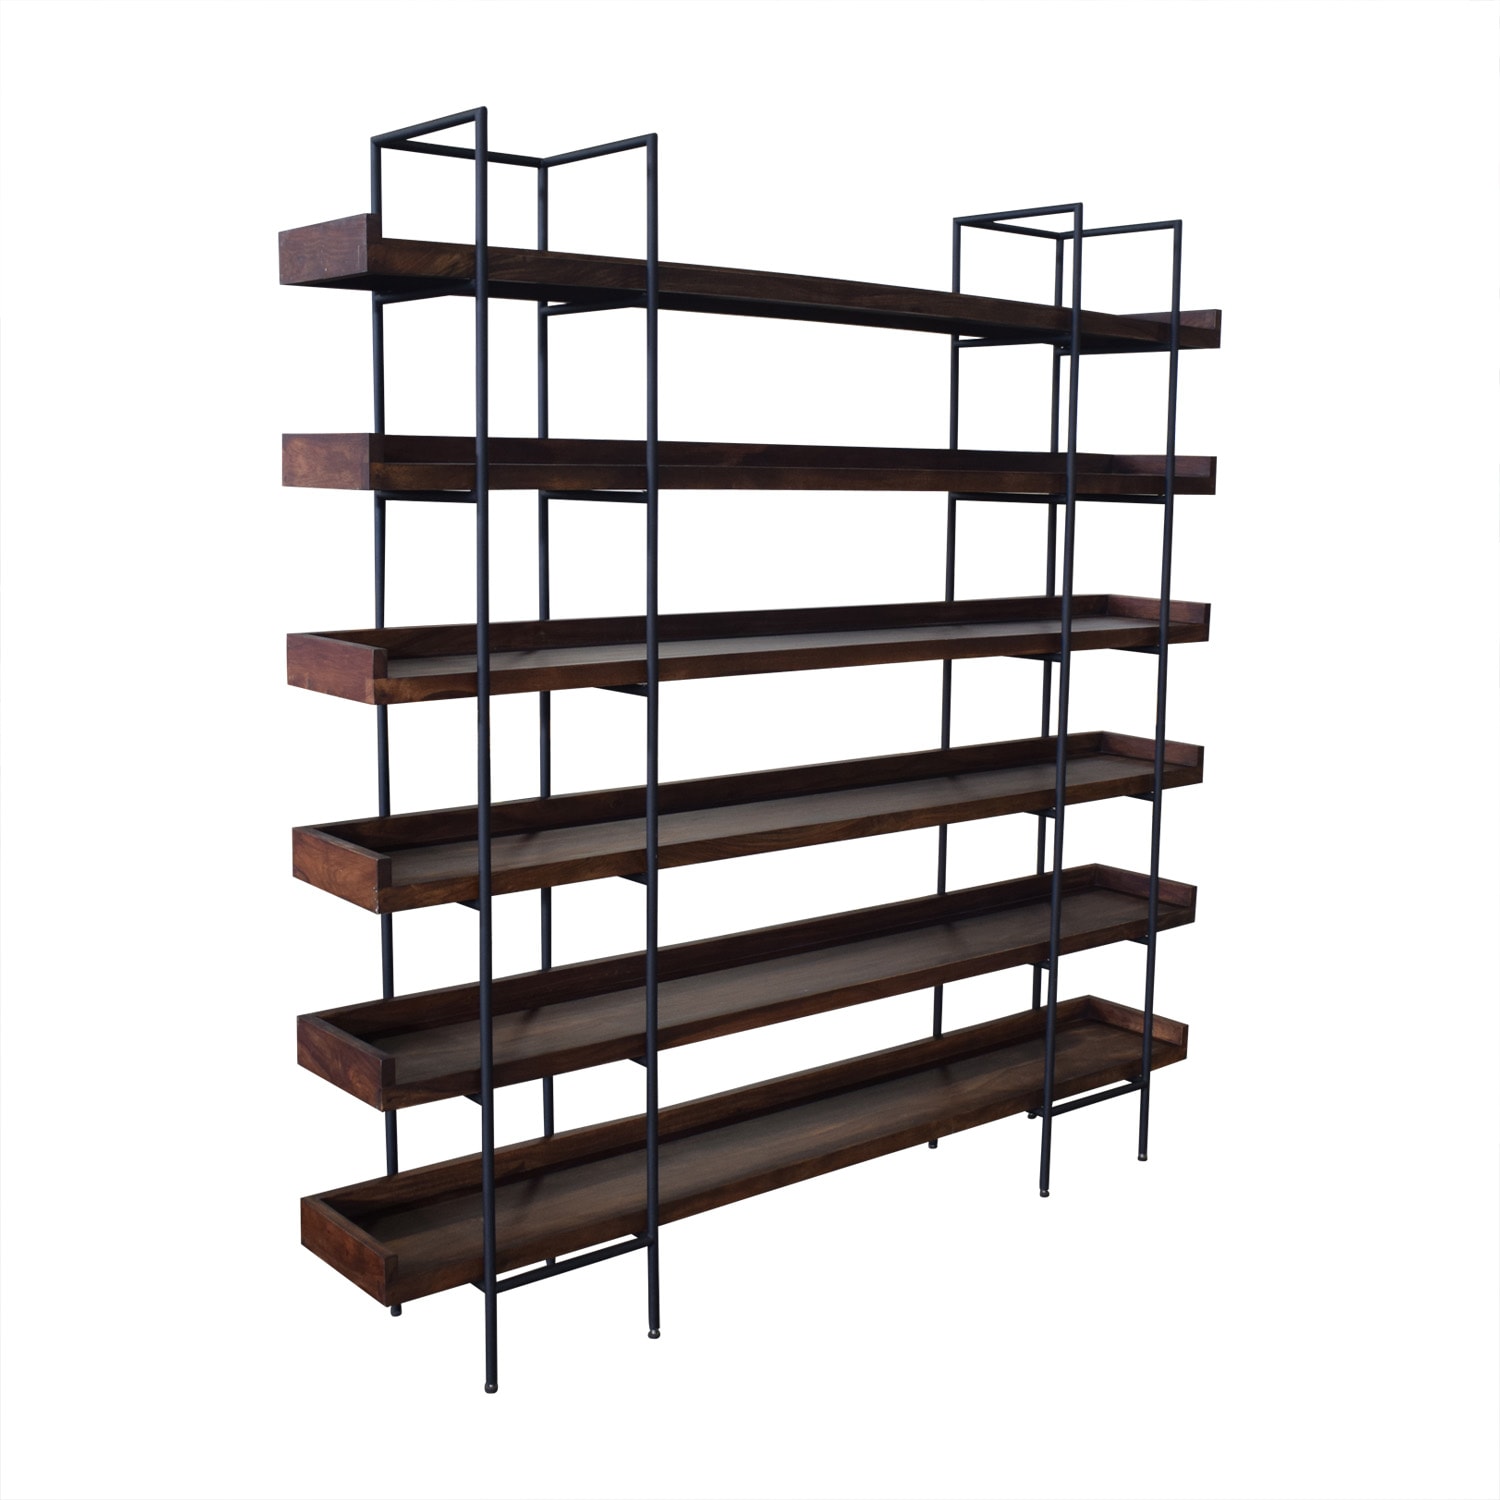 Crate & Barrel Crate & Barrel Wood Shelves nj